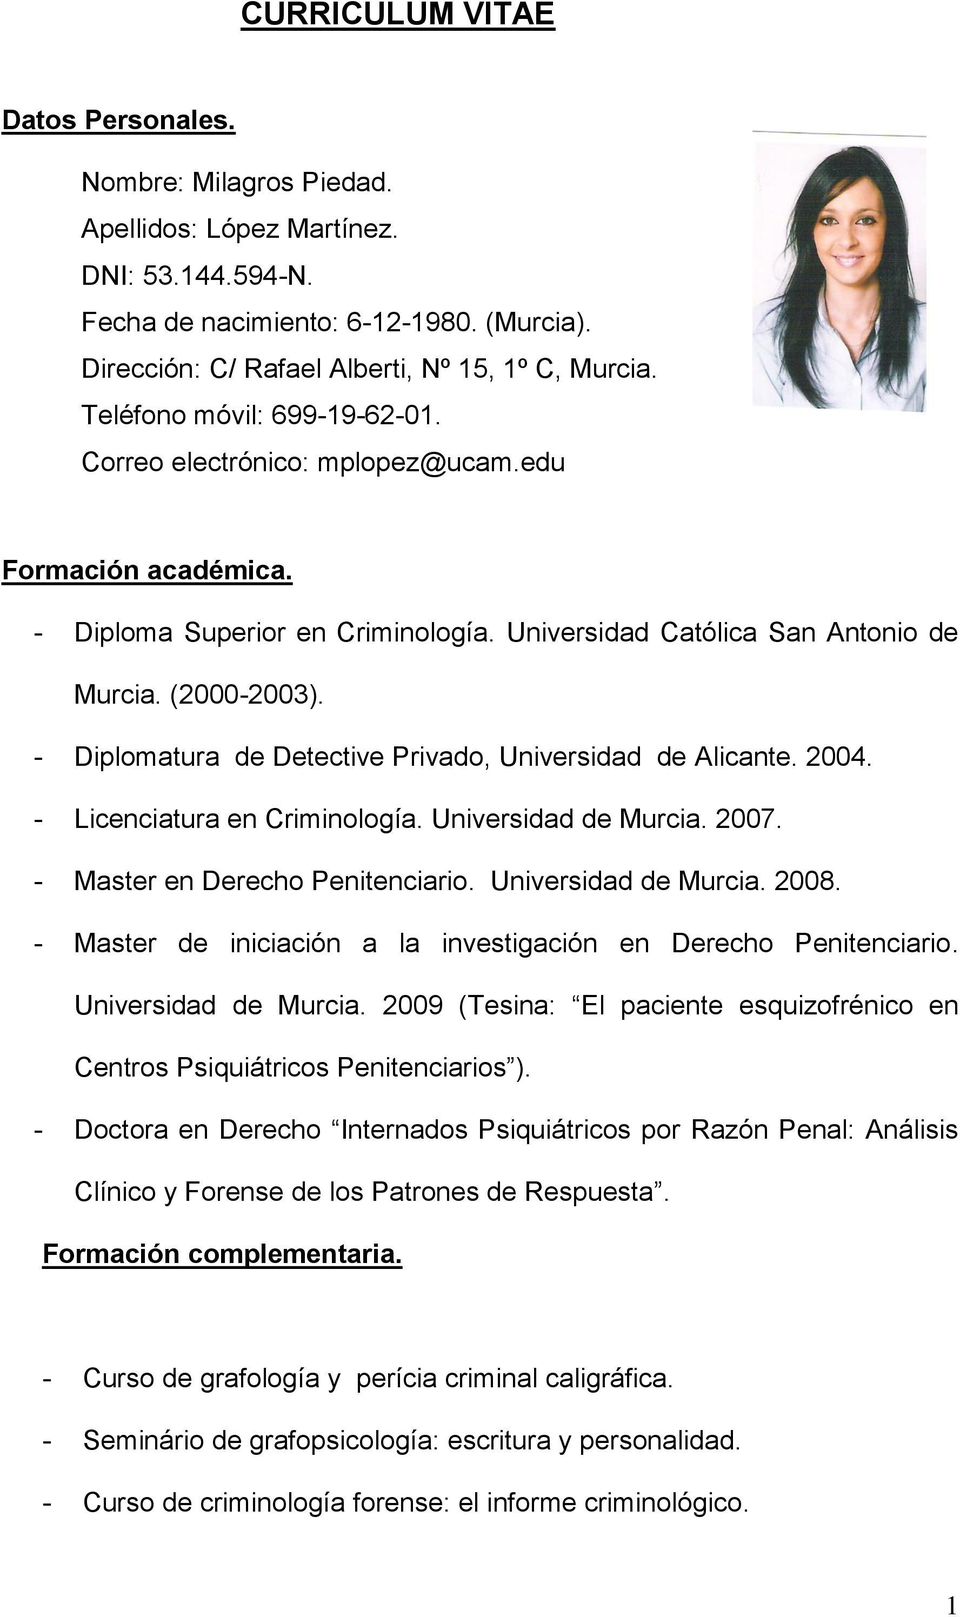 - Diplomatura de Detective Privado, Universidad de Alicante. 2004. - Licenciatura en Criminología. Universidad de Murcia. 2007. - Master en Derecho Penitenciario. Universidad de Murcia. 2008.